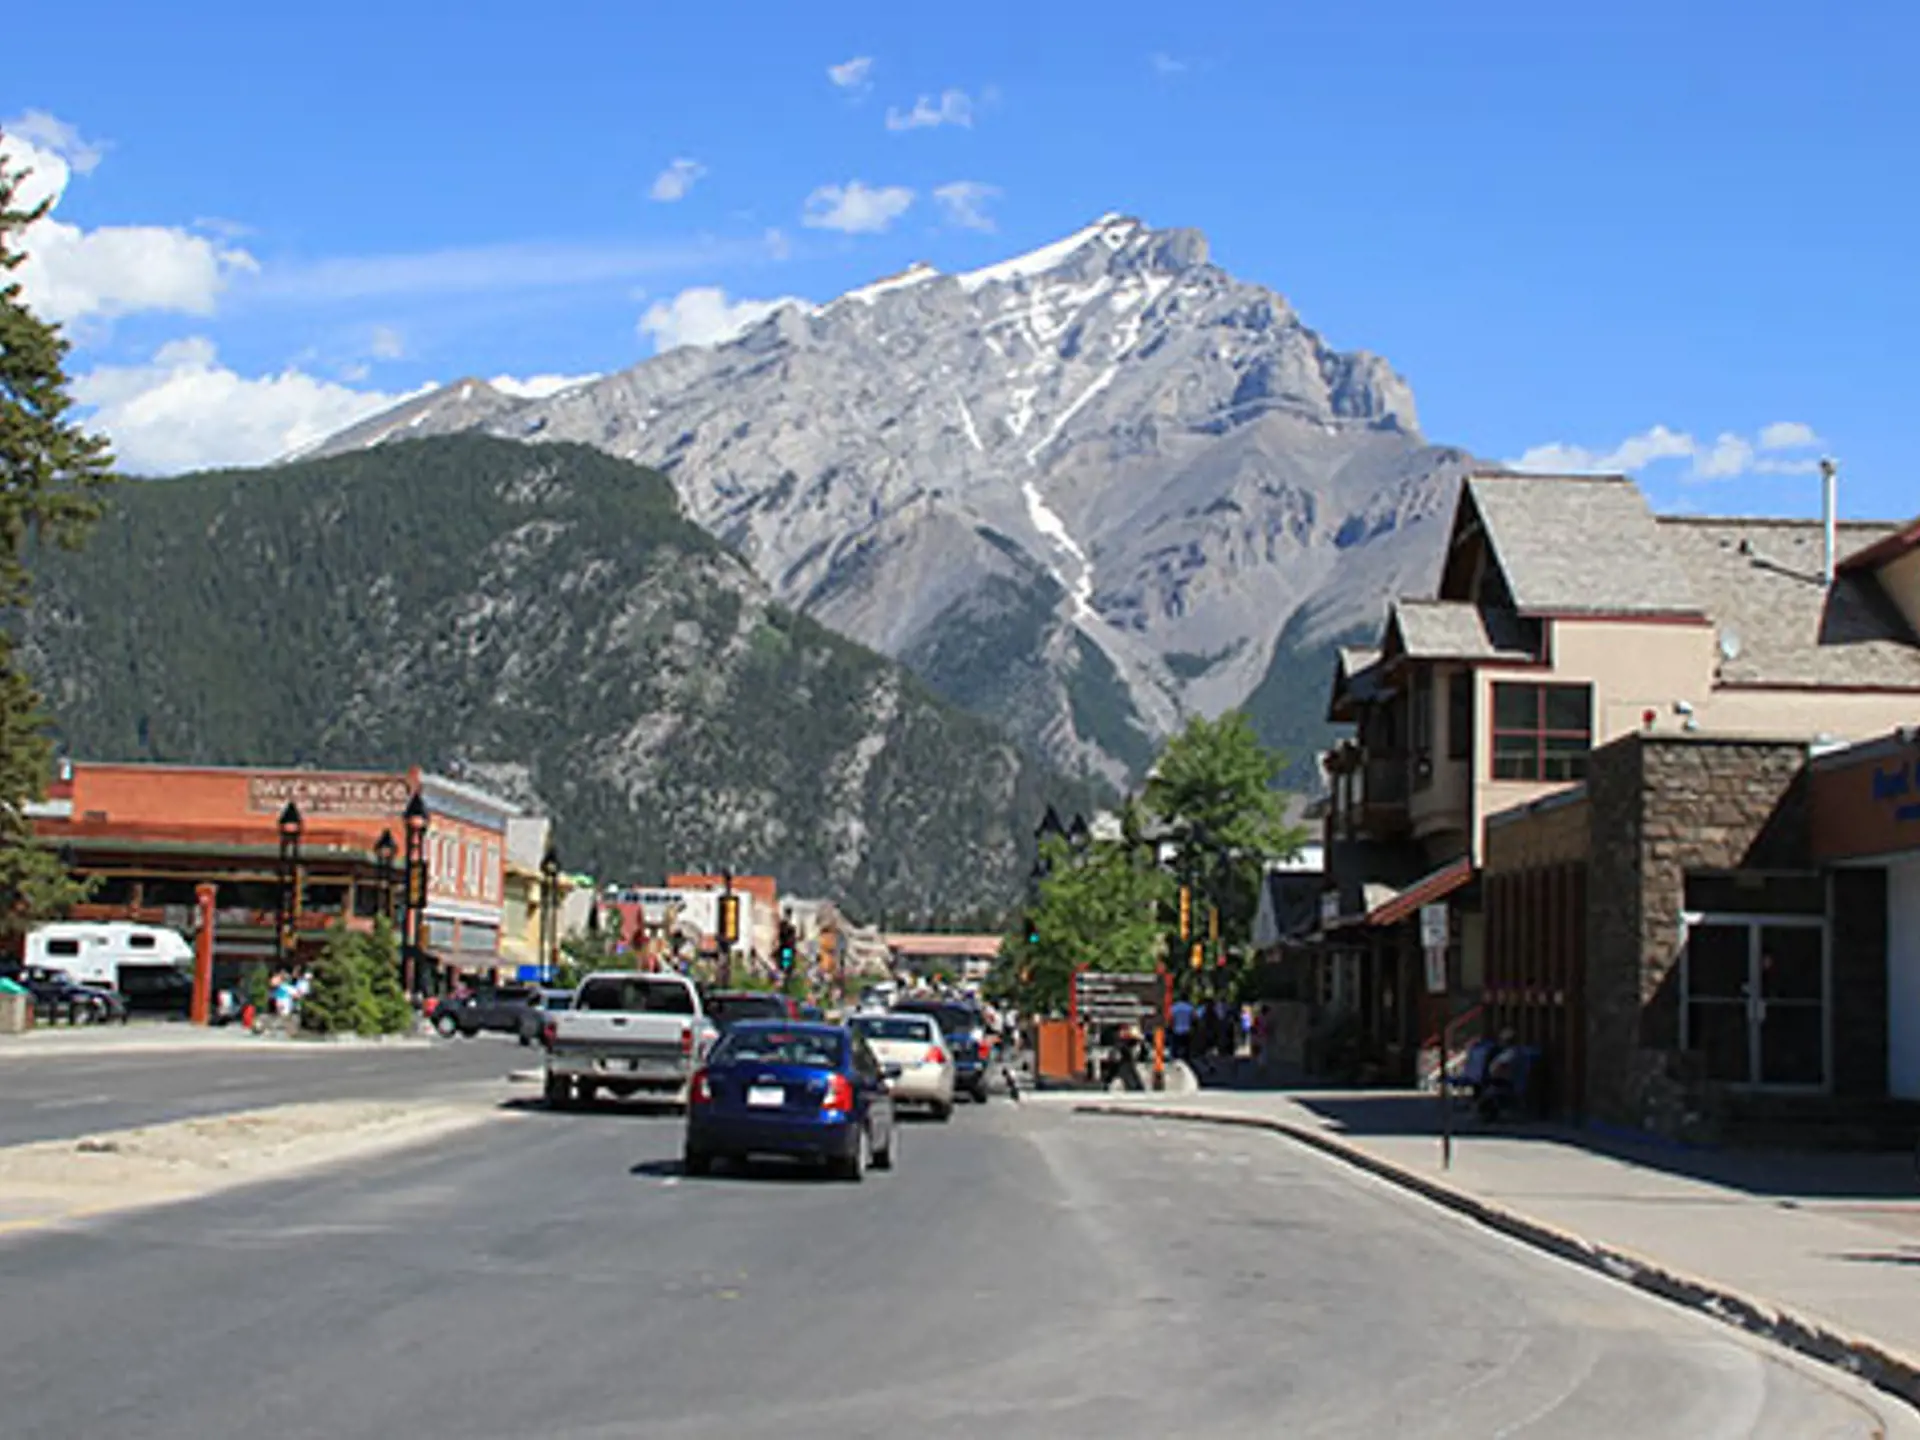 BANFF - Hyggelig by med udsigt til Canadian Rocky Mountains, Check Point Travel